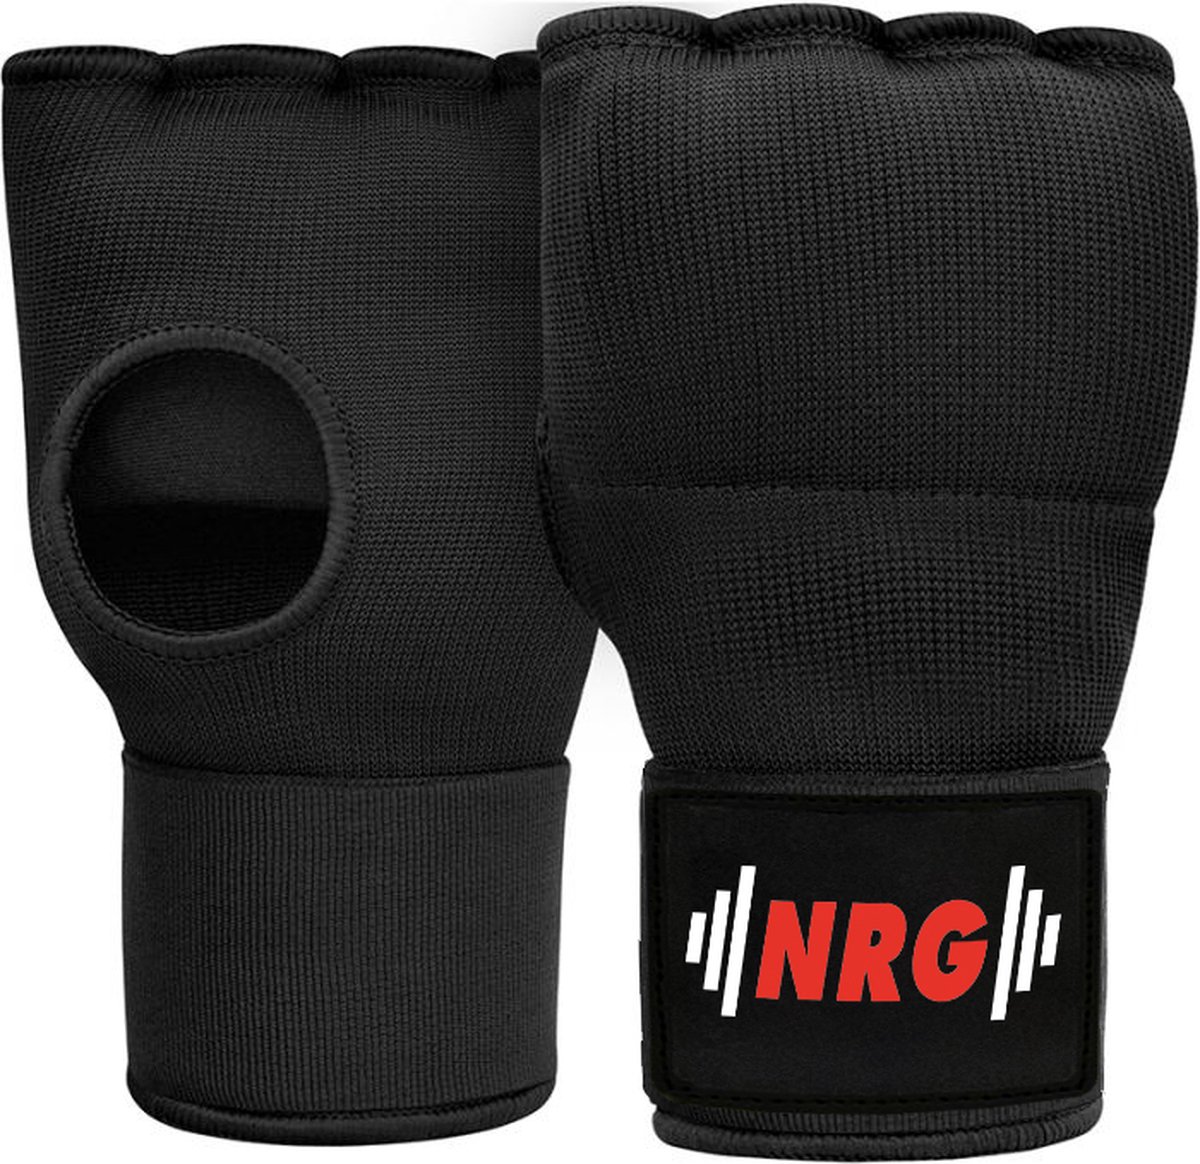 NRG Boxing - Bandage Boksen - Binnenhandschoenen Boksen - Zwart - Katoen - Gel Padding - Met 75 cm lange bandage - Kickboksen -Maat L